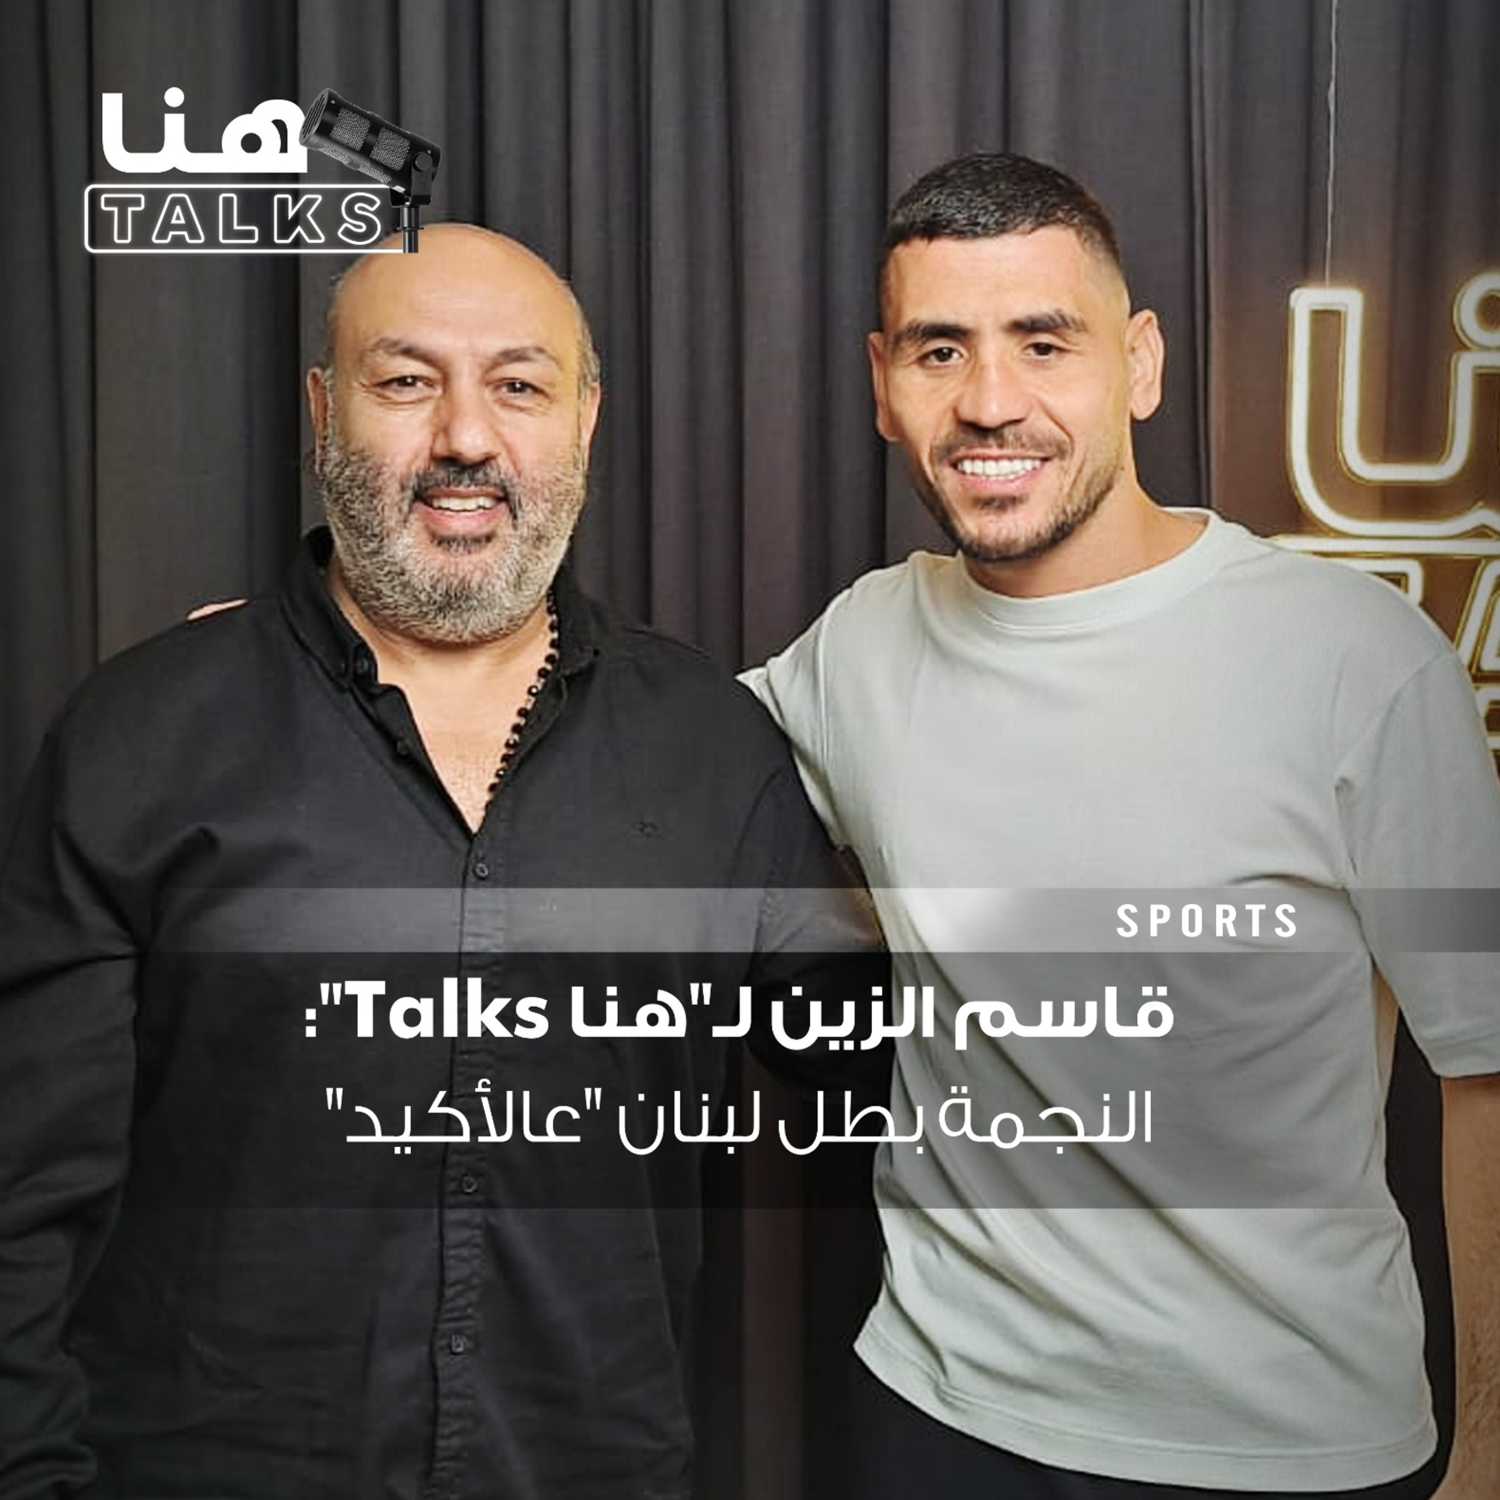 قاسم الزين لـ"هنا Talks": النجمة بطل لبنان "عالأكيد"